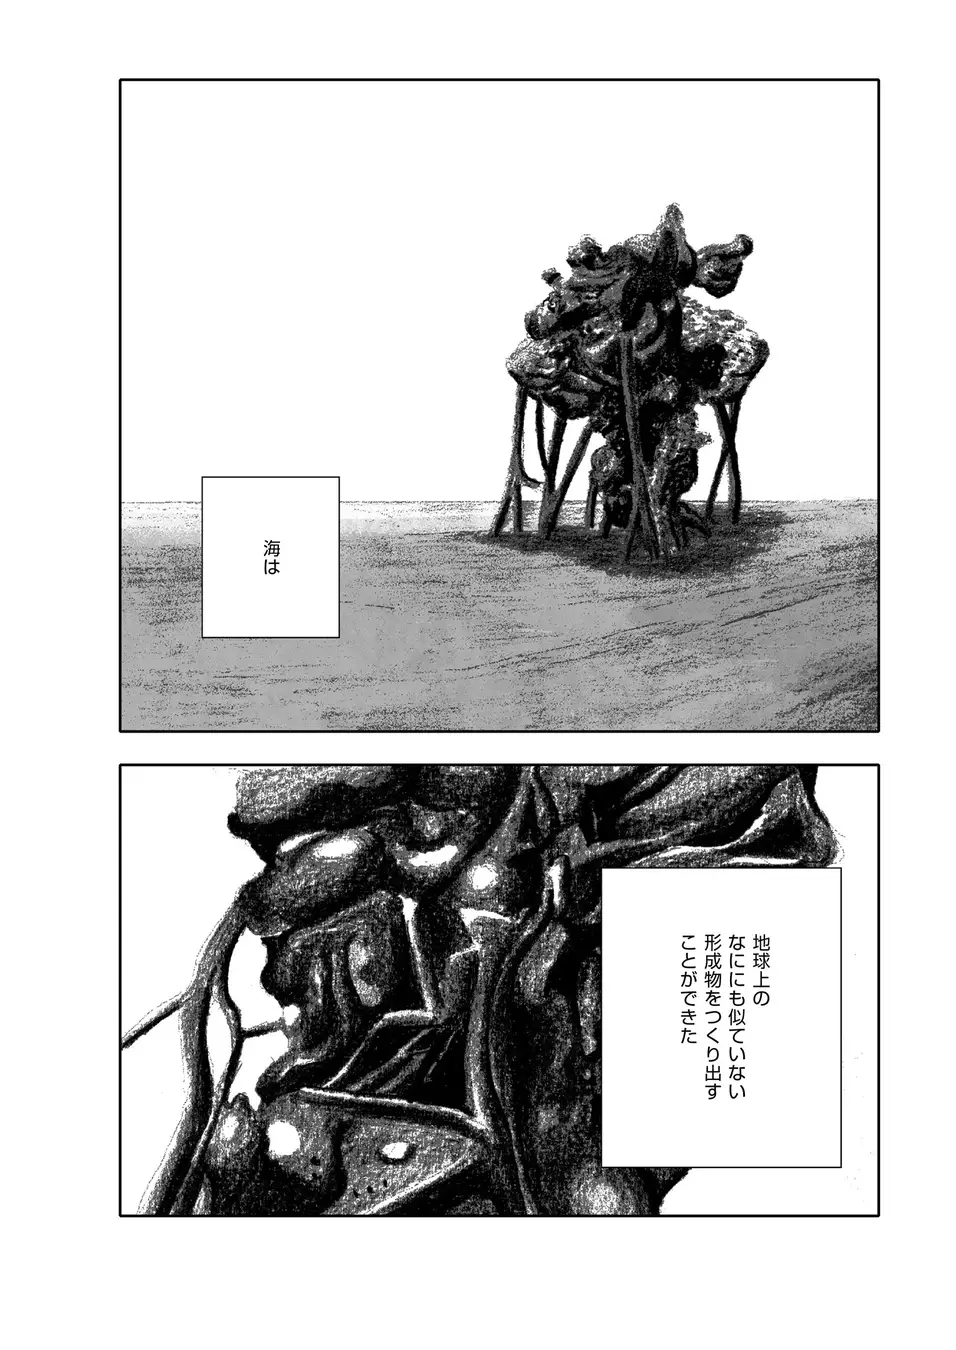 早川書房のコミックサイト「ハヤコミ」が7月23日にオープンへ。『そして誰もいなくなった』など世界の名作小説をコミカライズ_010